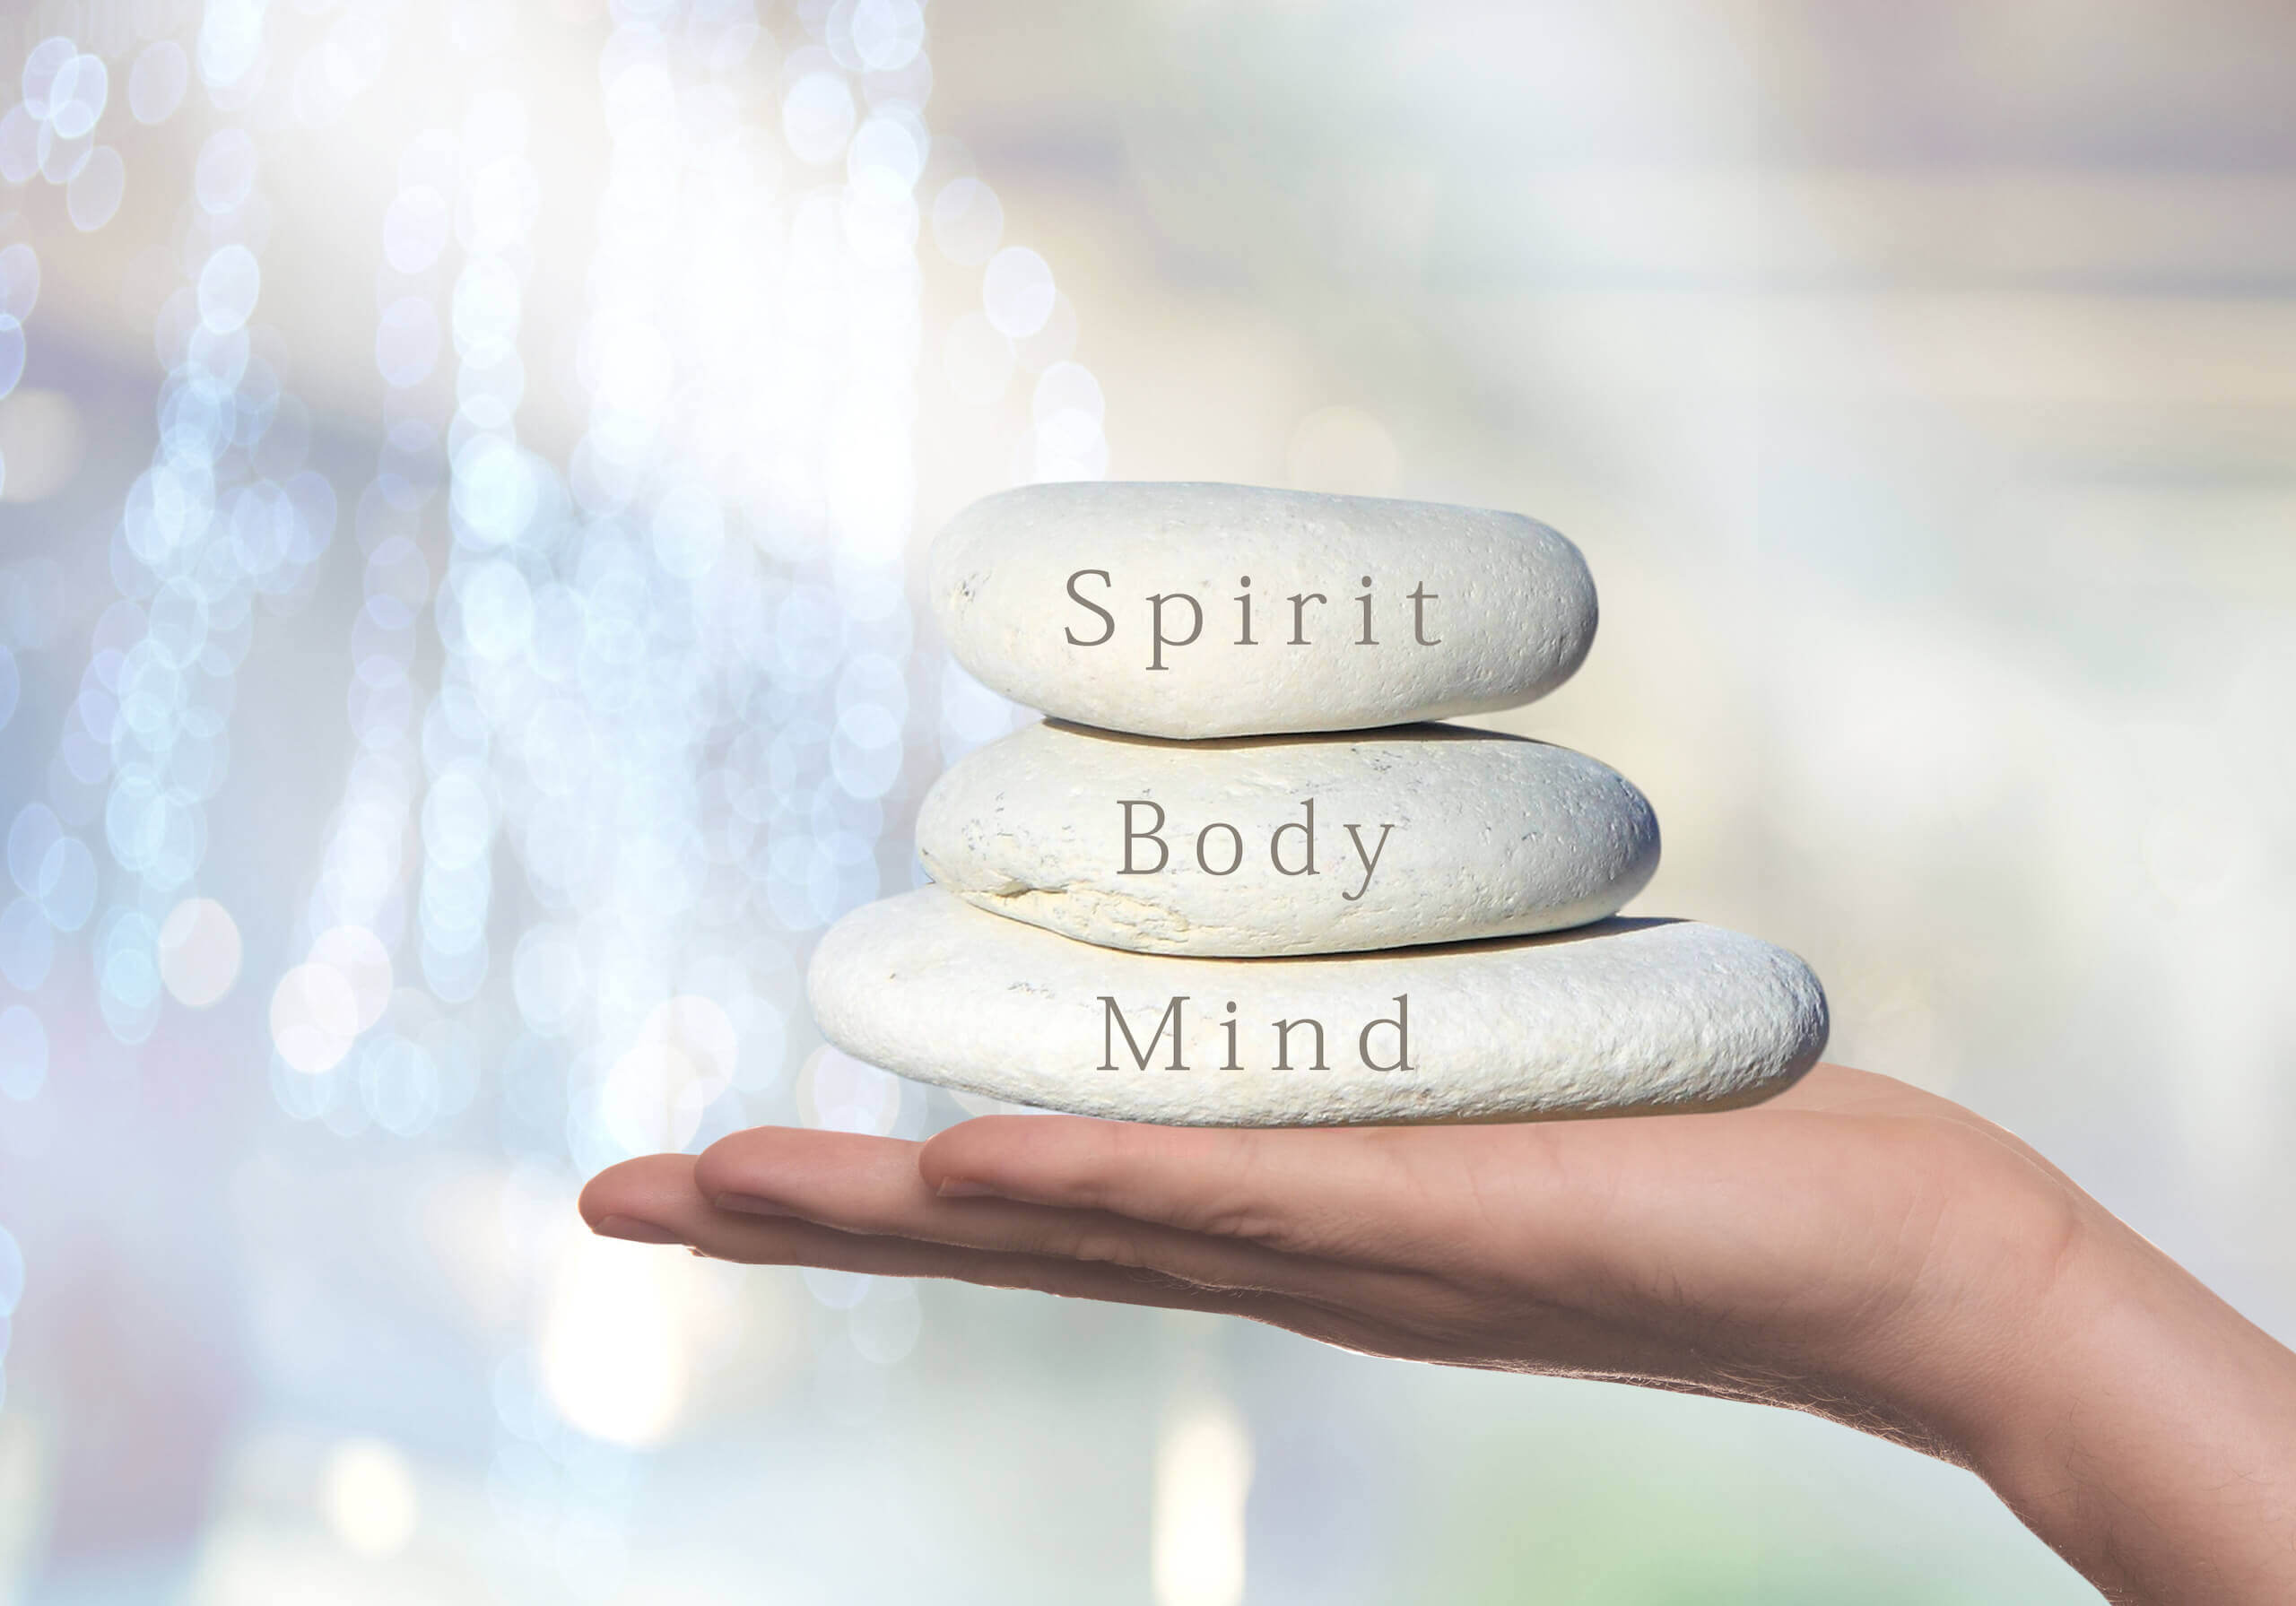 Ausgestreckte Hand hält Steine mit den Aufschriften "Spirit", "Body" und "Mind"